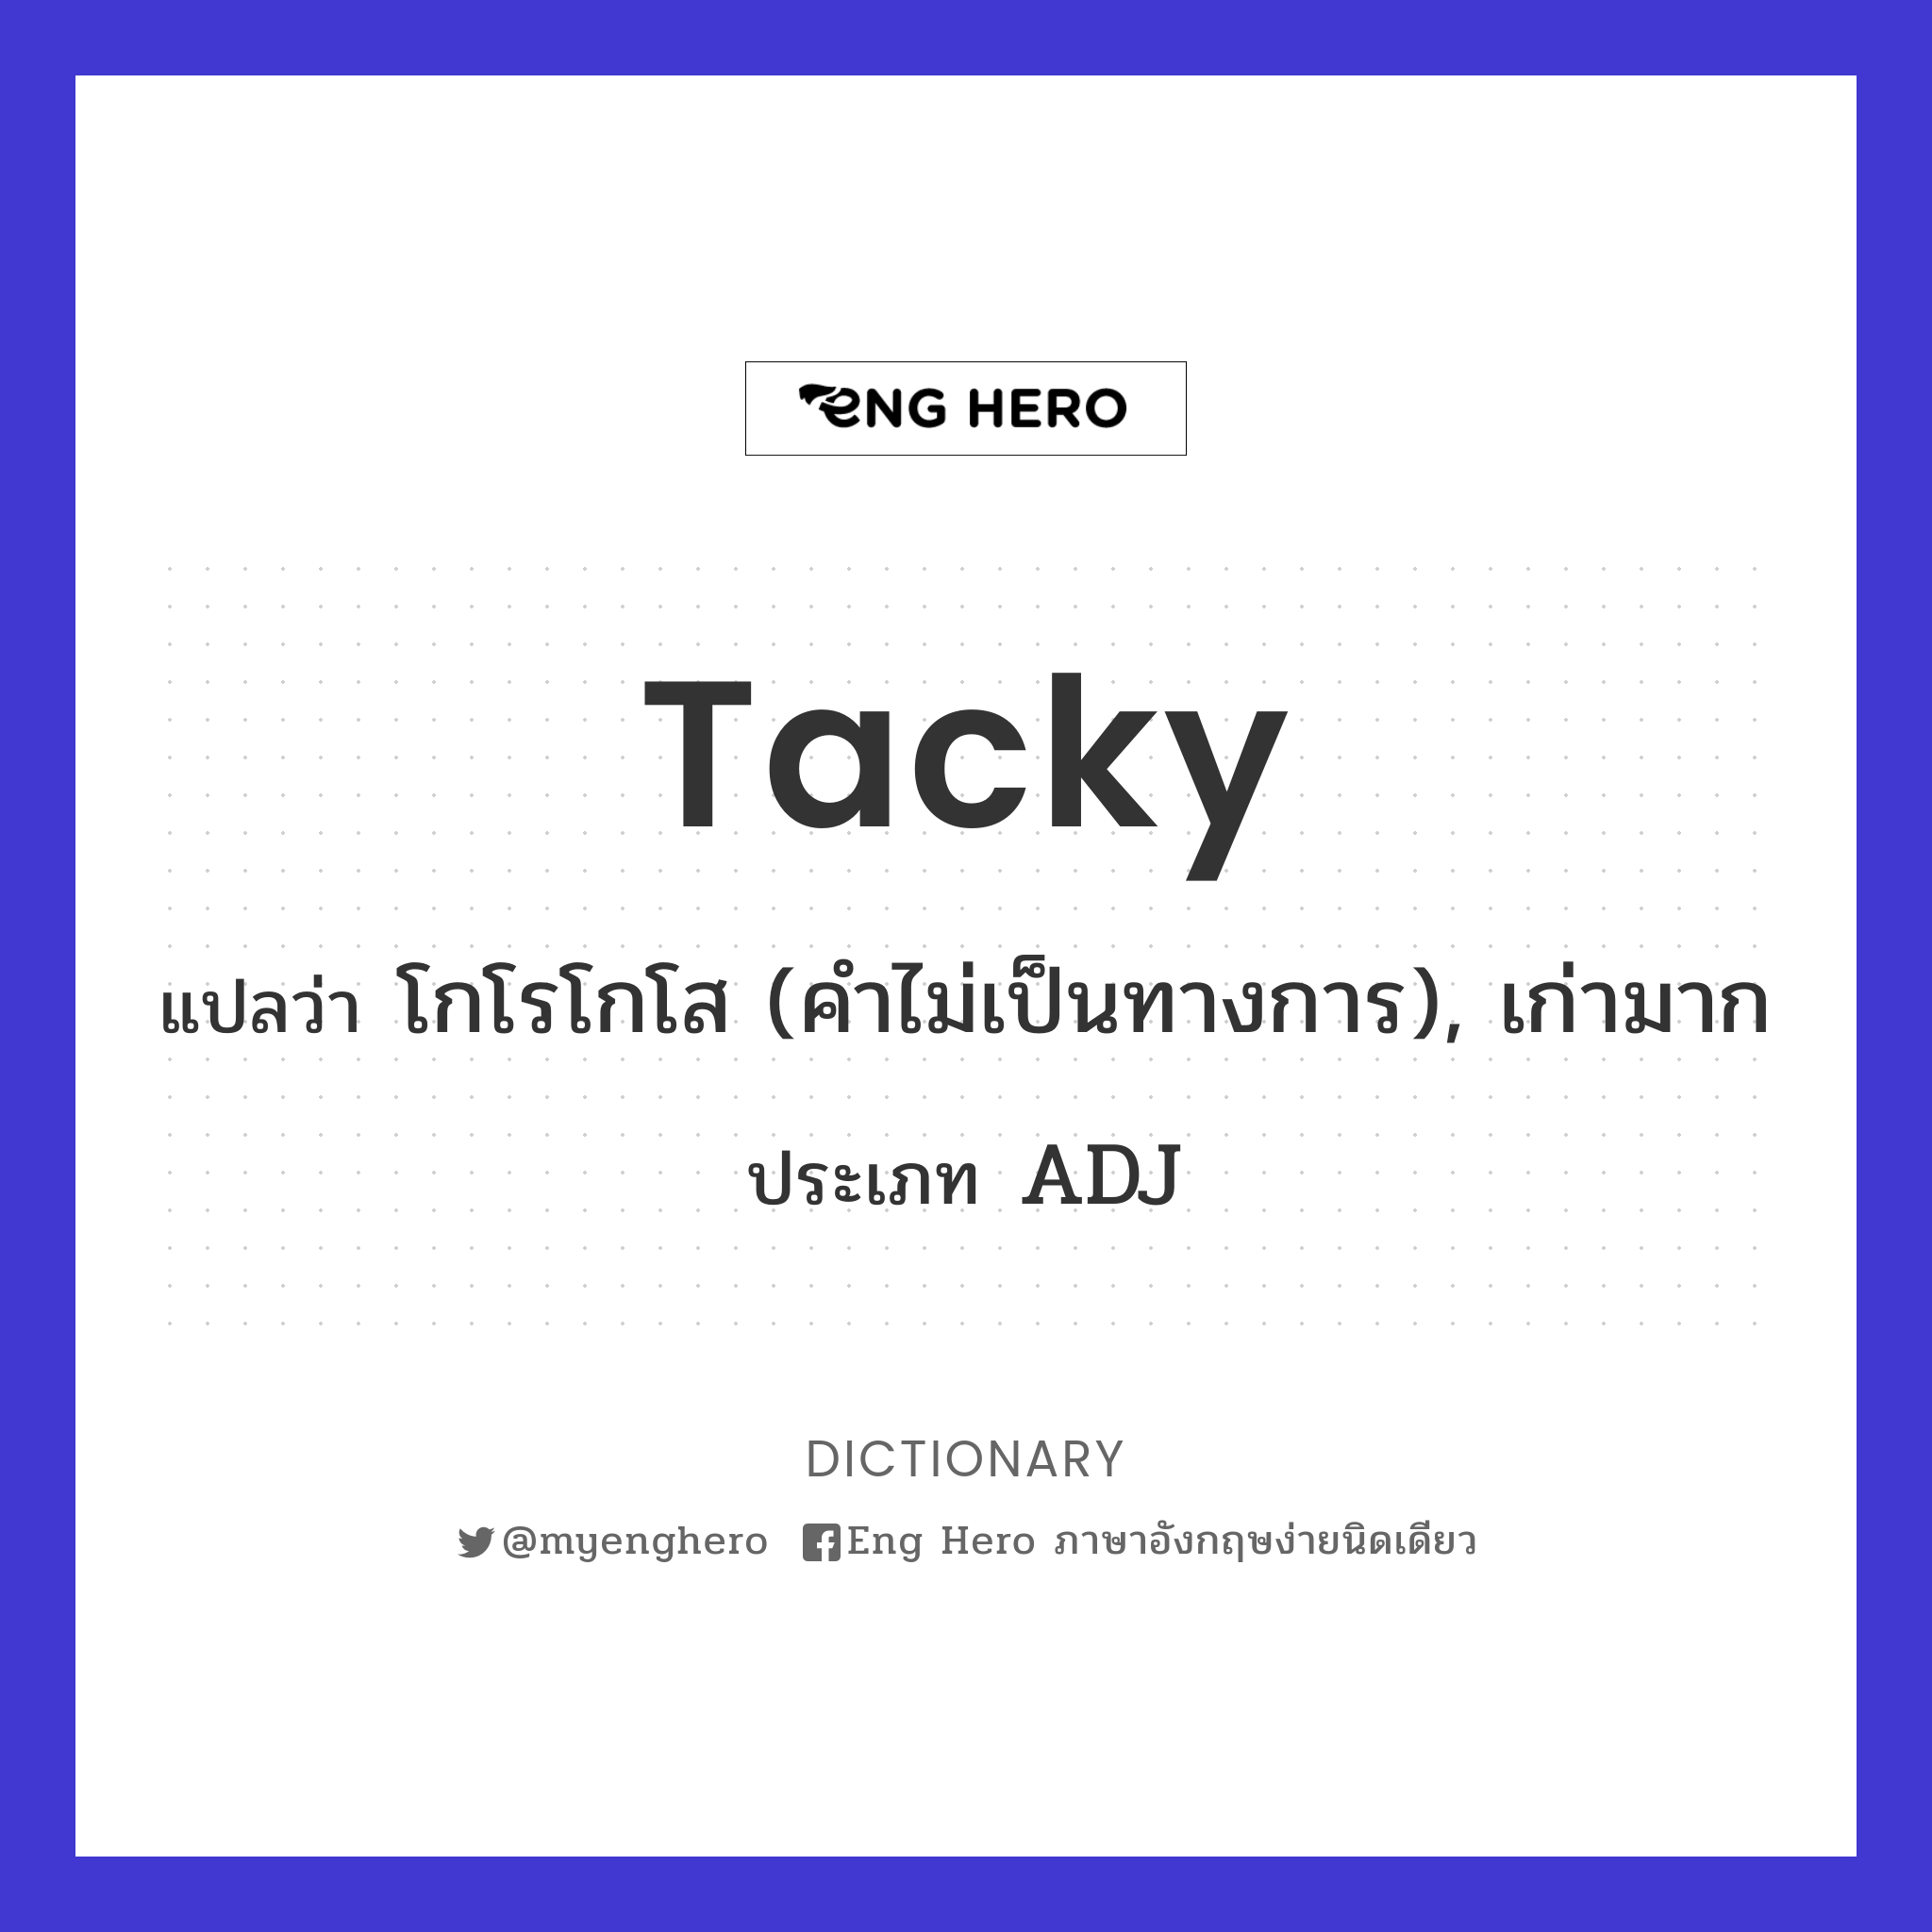 tacky